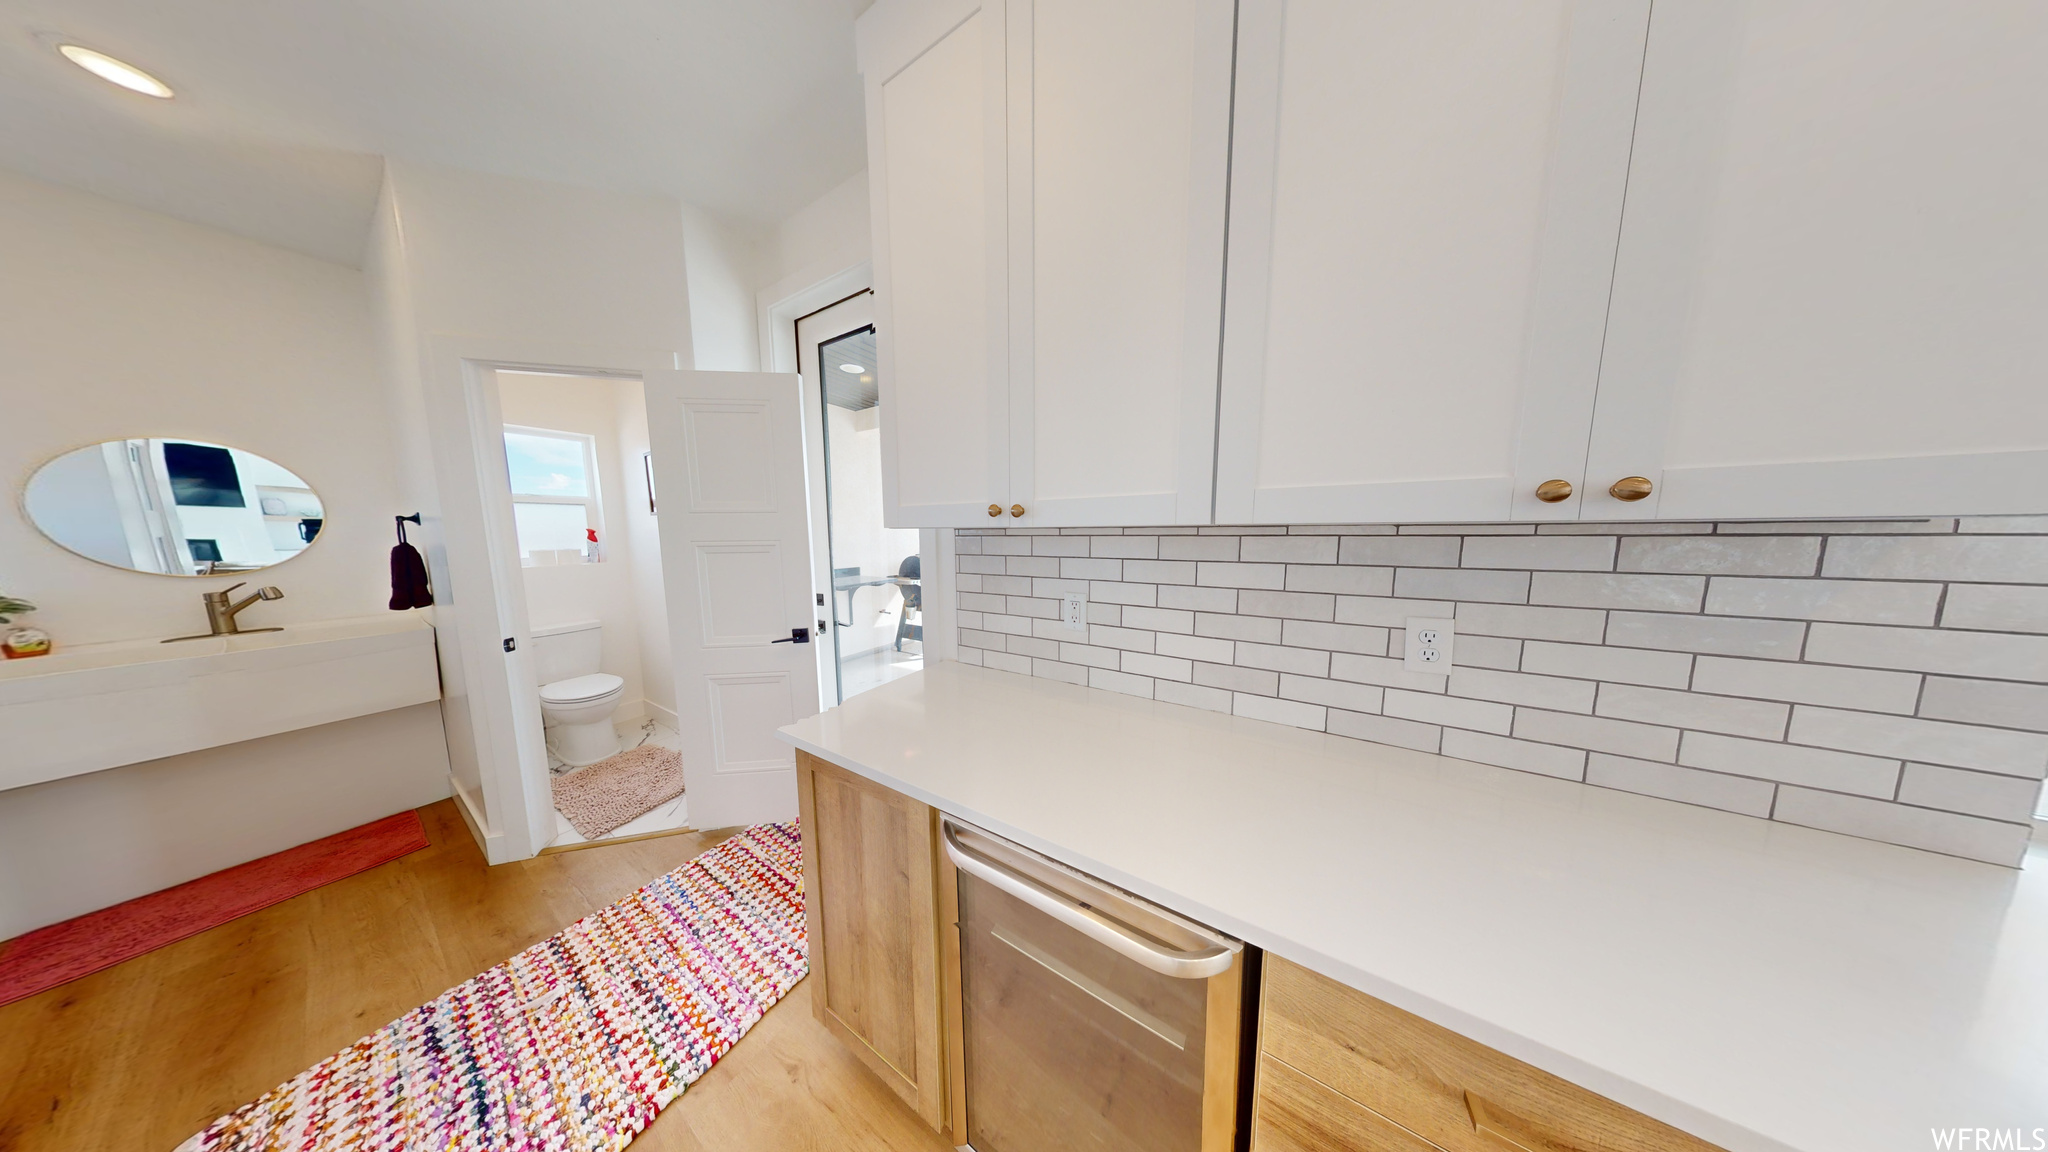 Kitchen with light hardwood / wood-style floors, backsplash, and white cabinets